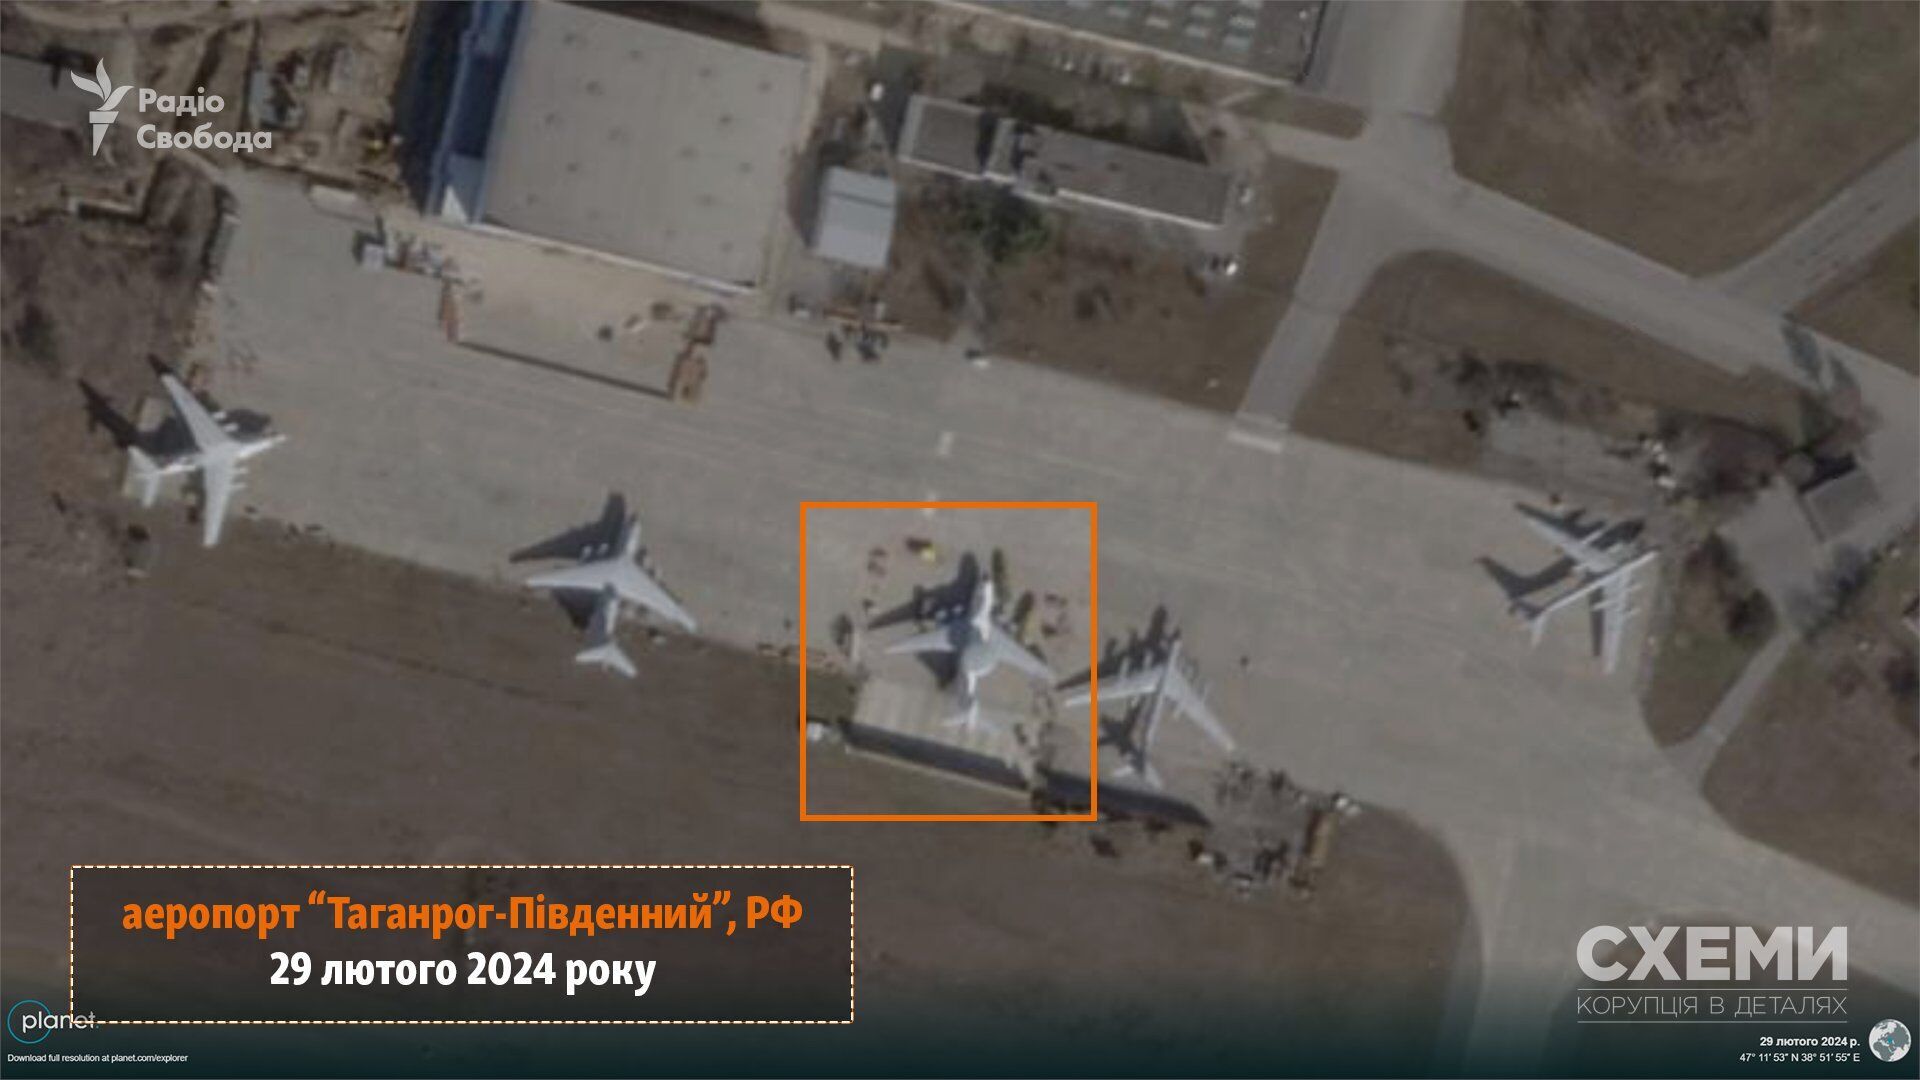 Всього за 130 км від фронту: виявлено місце дислокування ще одного російського літака А-50. Супутникові фото